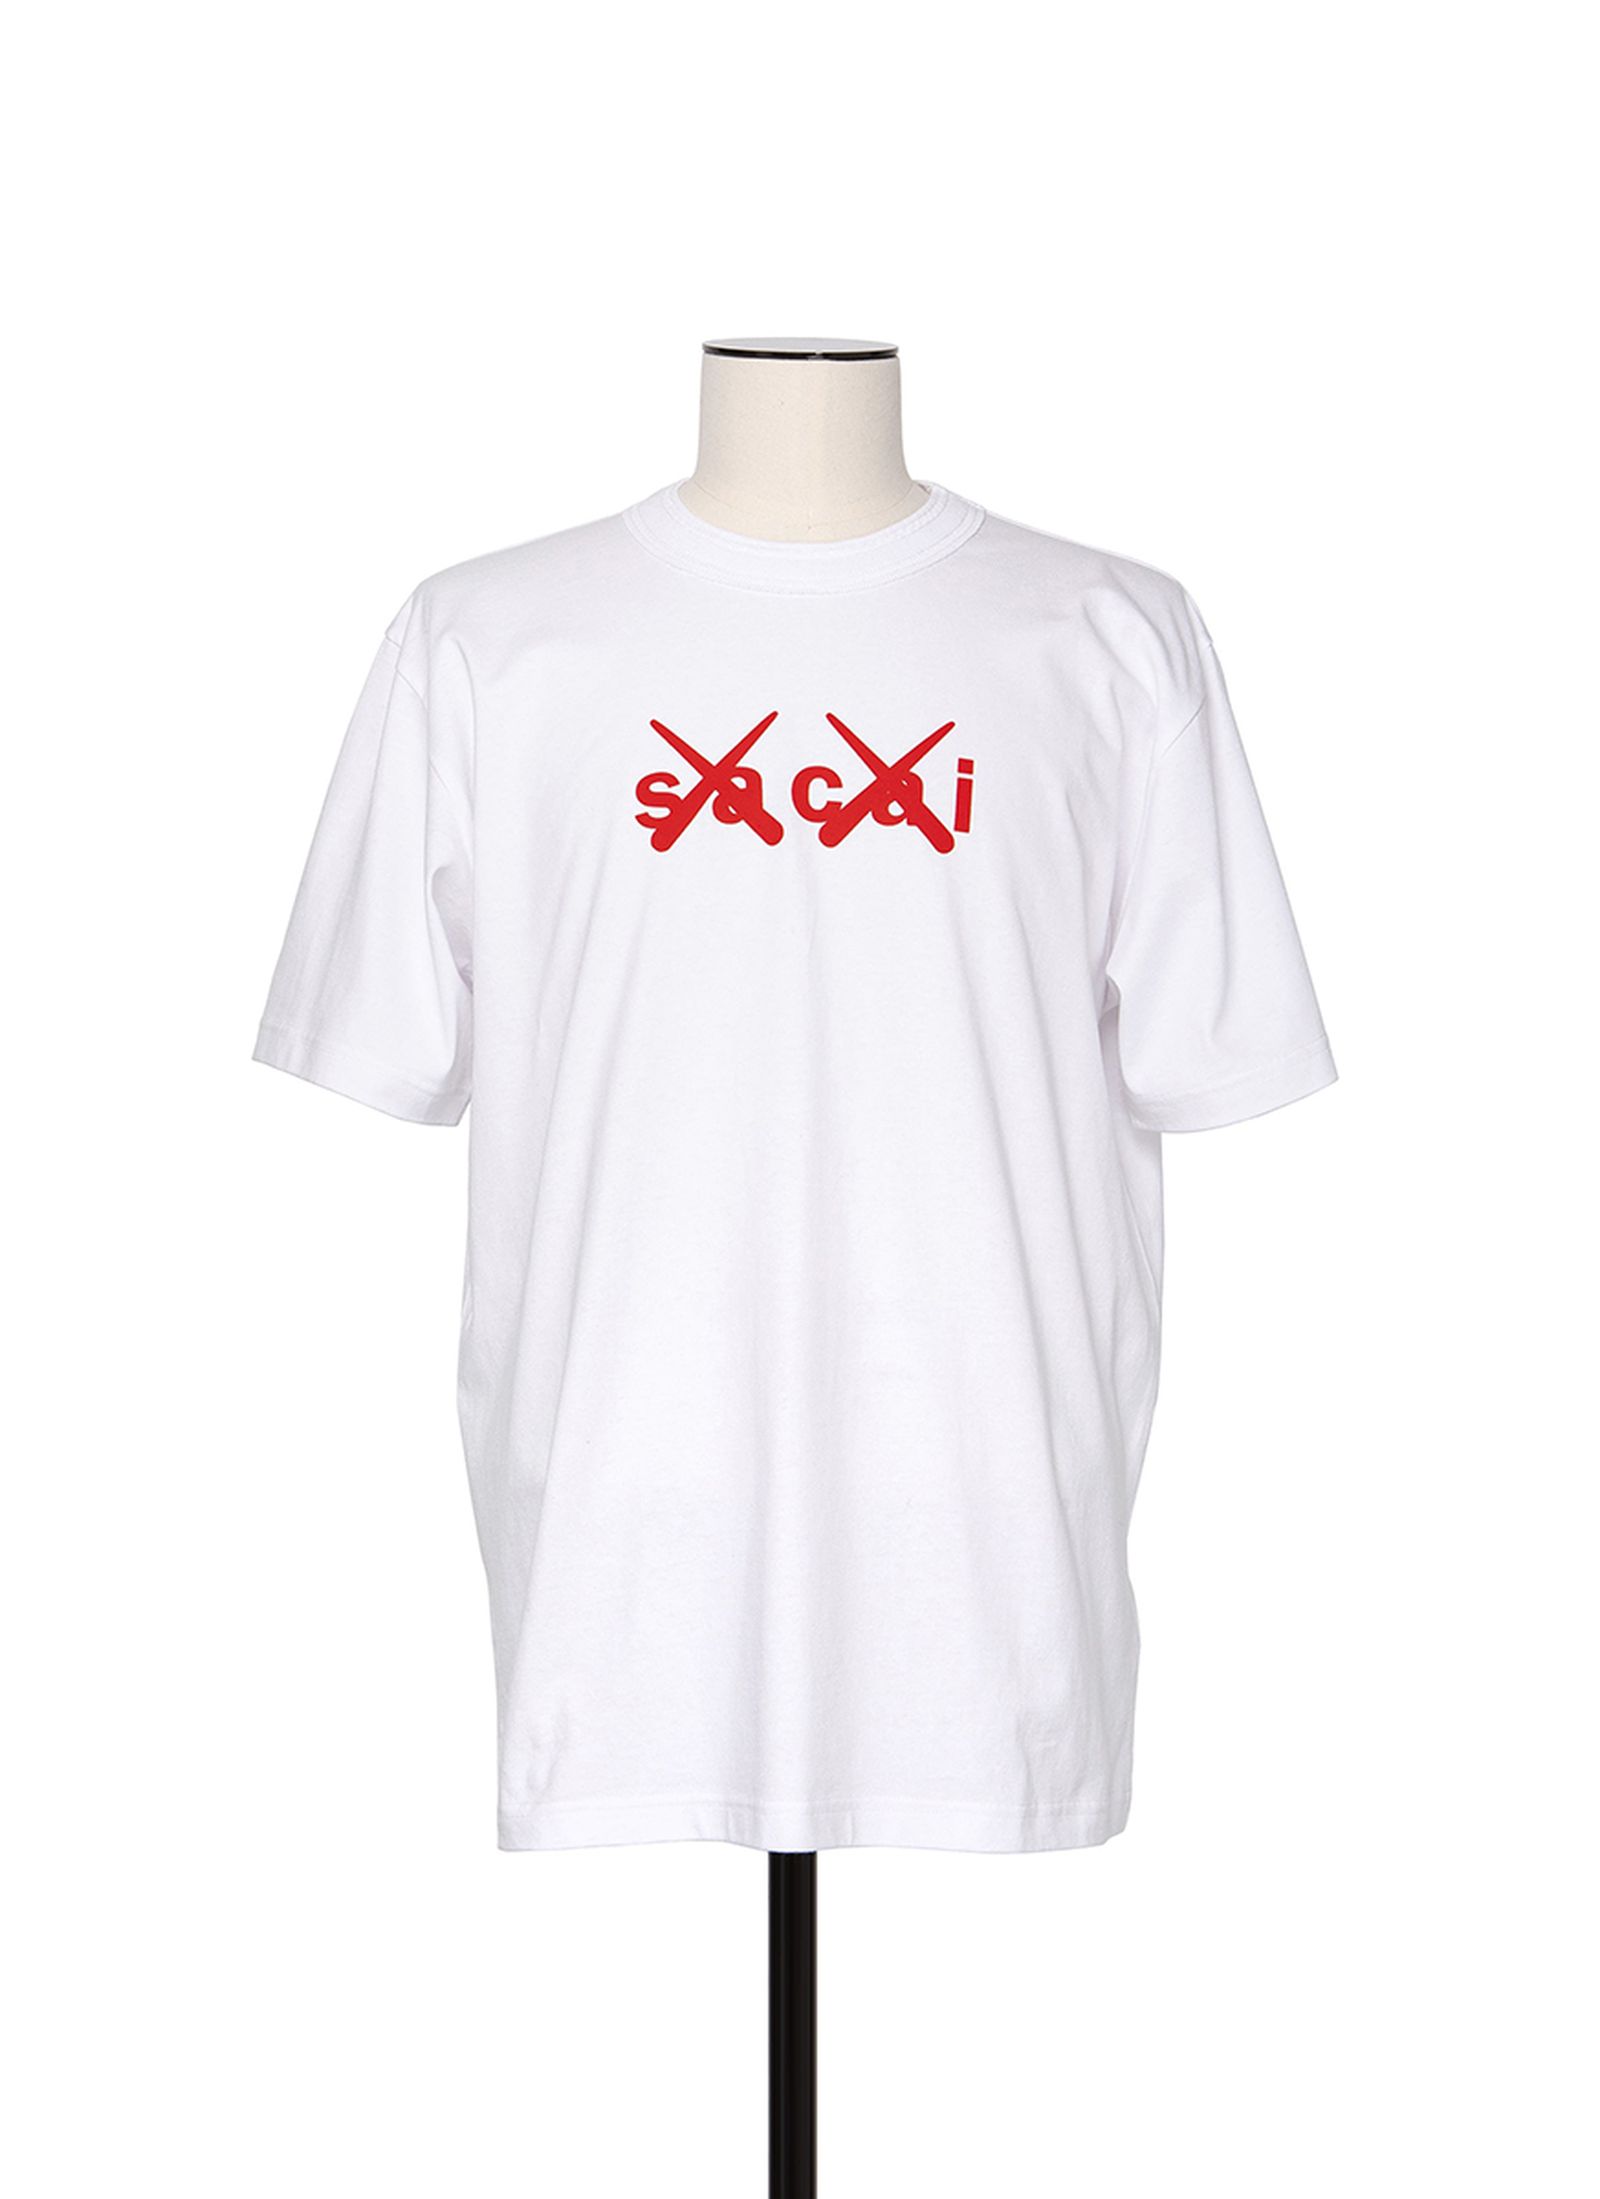 sacai-kaws-fall-2021-collaboration-tee-shirts- (7)